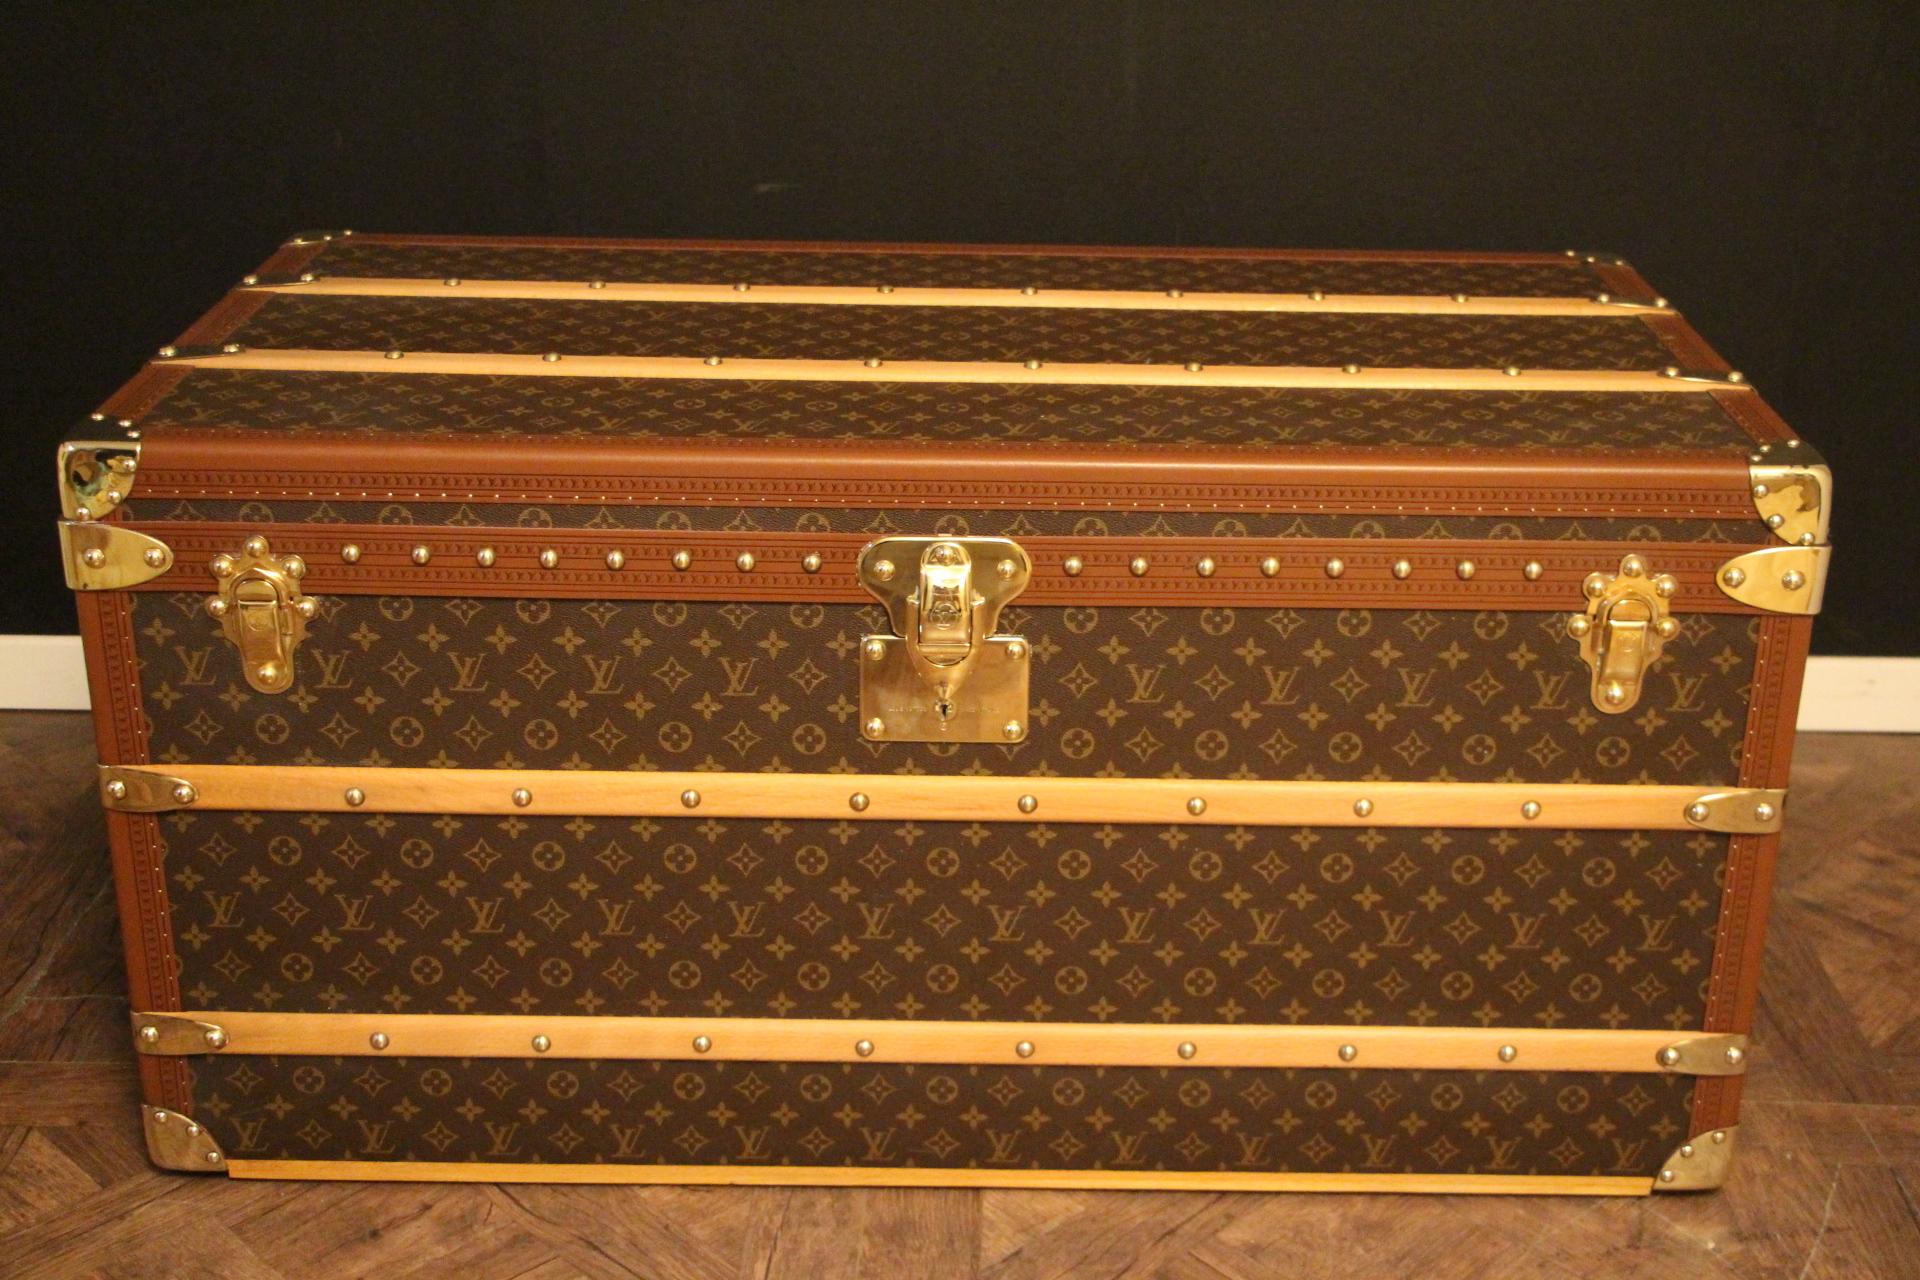 Cette superbe malle Louis Vuitton présente une toile monogramme, une garniture en lozine couleur miel, des serrures et des fermoirs en laiton massif estampillés LV, des clous ainsi que des poignées latérales en cuir et des coins en laiton. 
Toutes